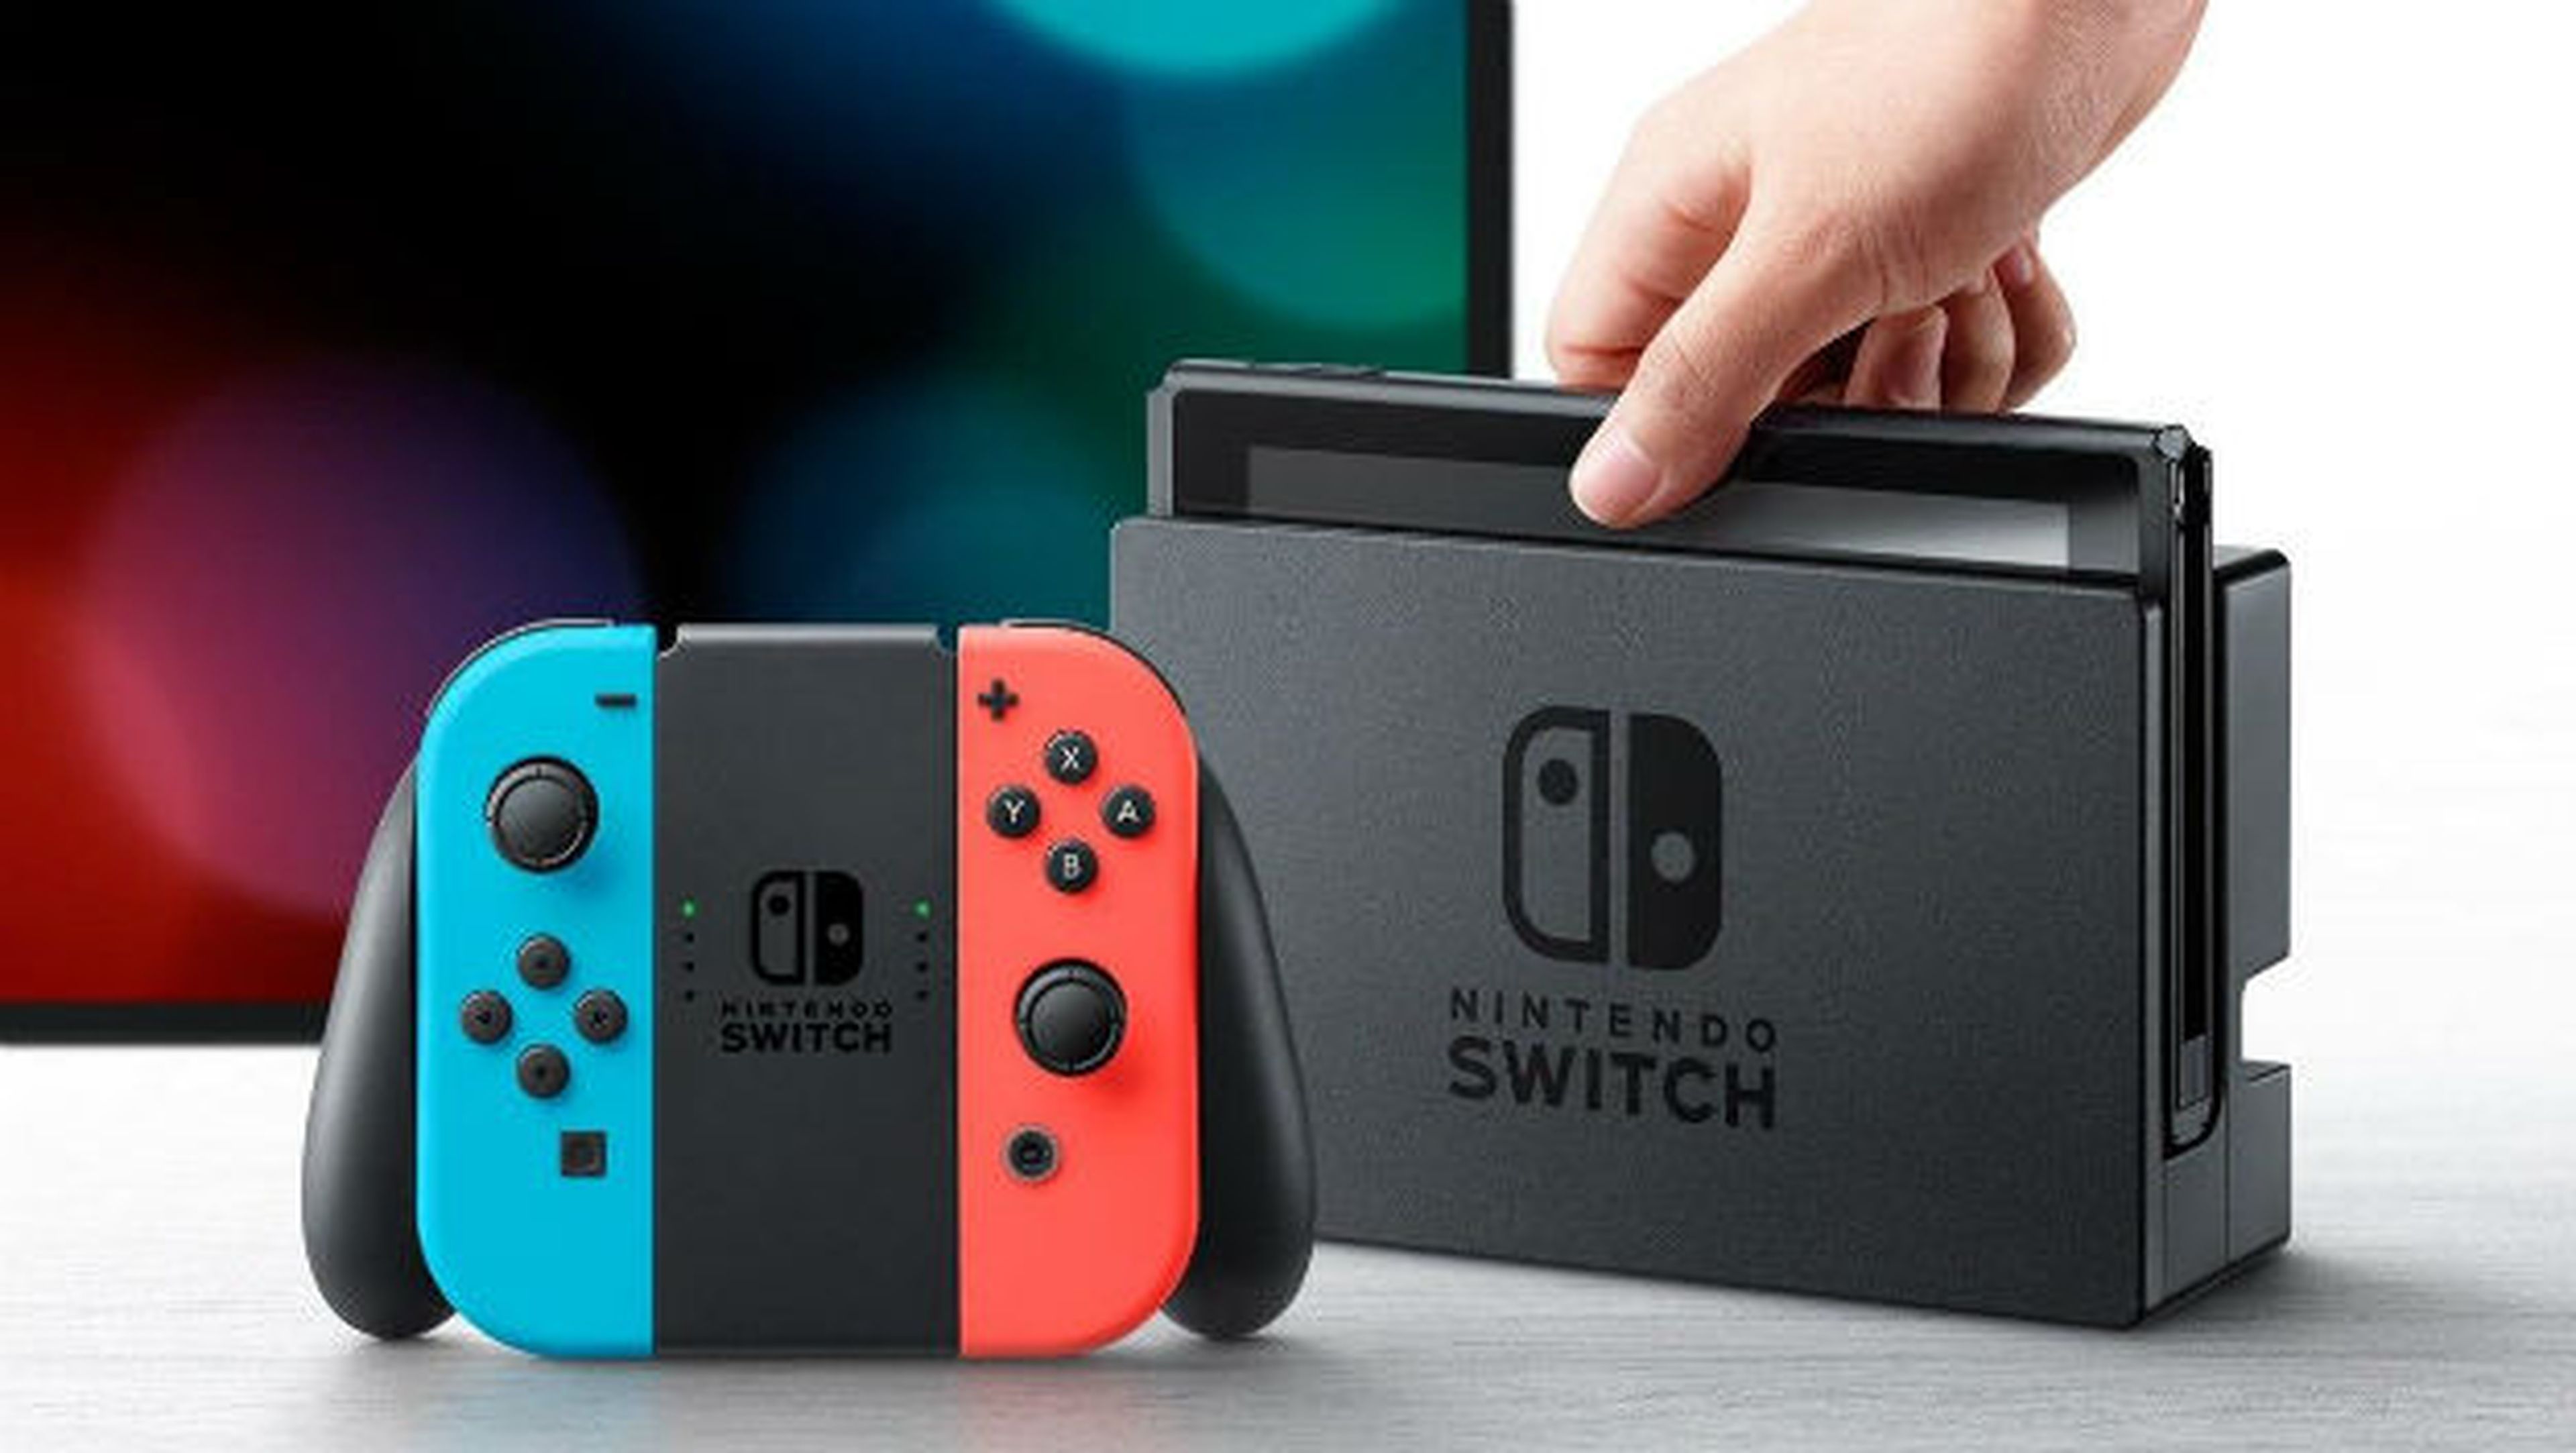 Pack de Nintendo Switch en oferta, ¿más barato que nunca?